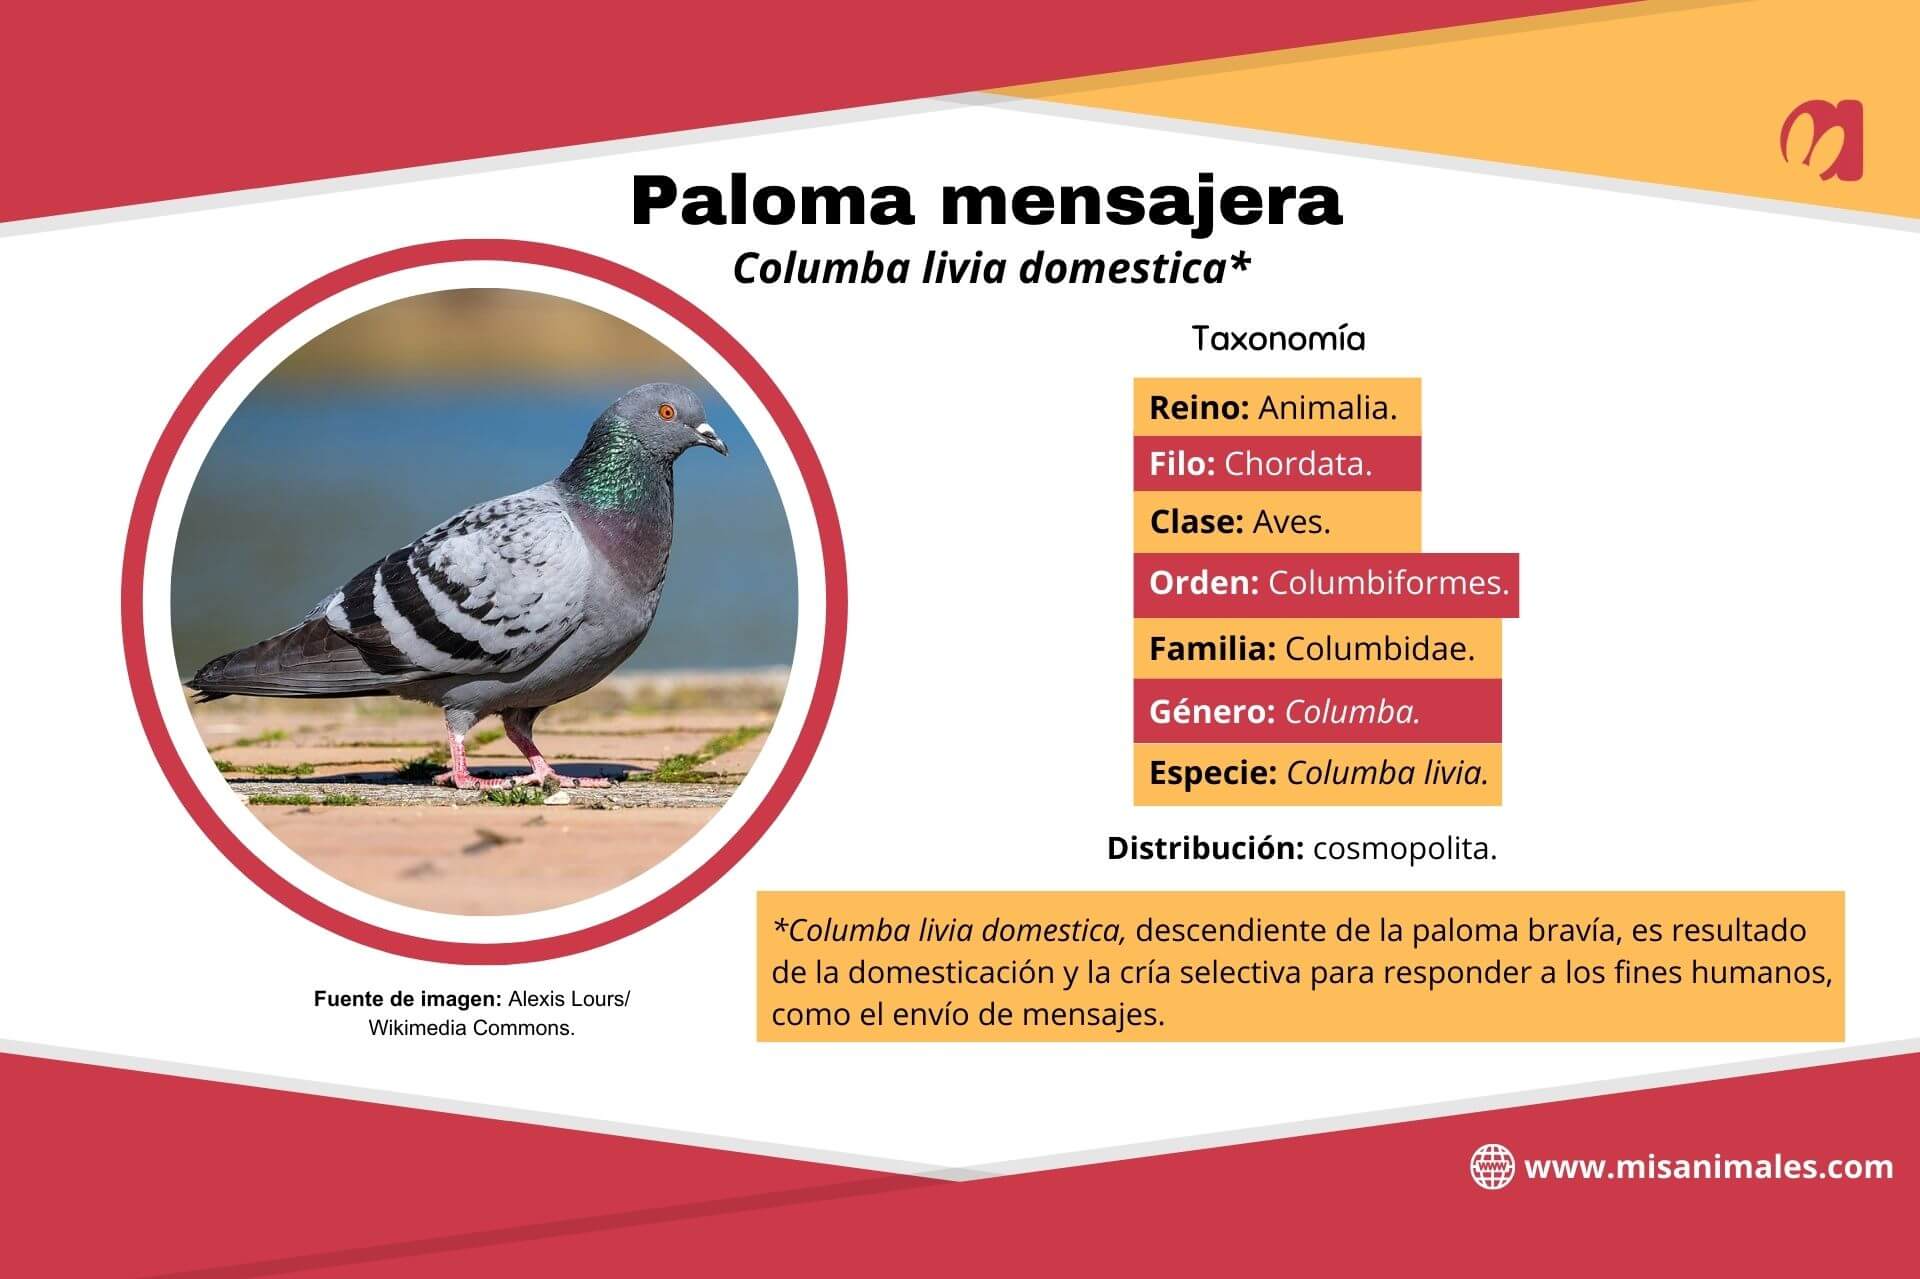 Ficha de paloma mensajera con información sobre taxonomía, distribución, domesticación y cría selectiva para fines humanos.